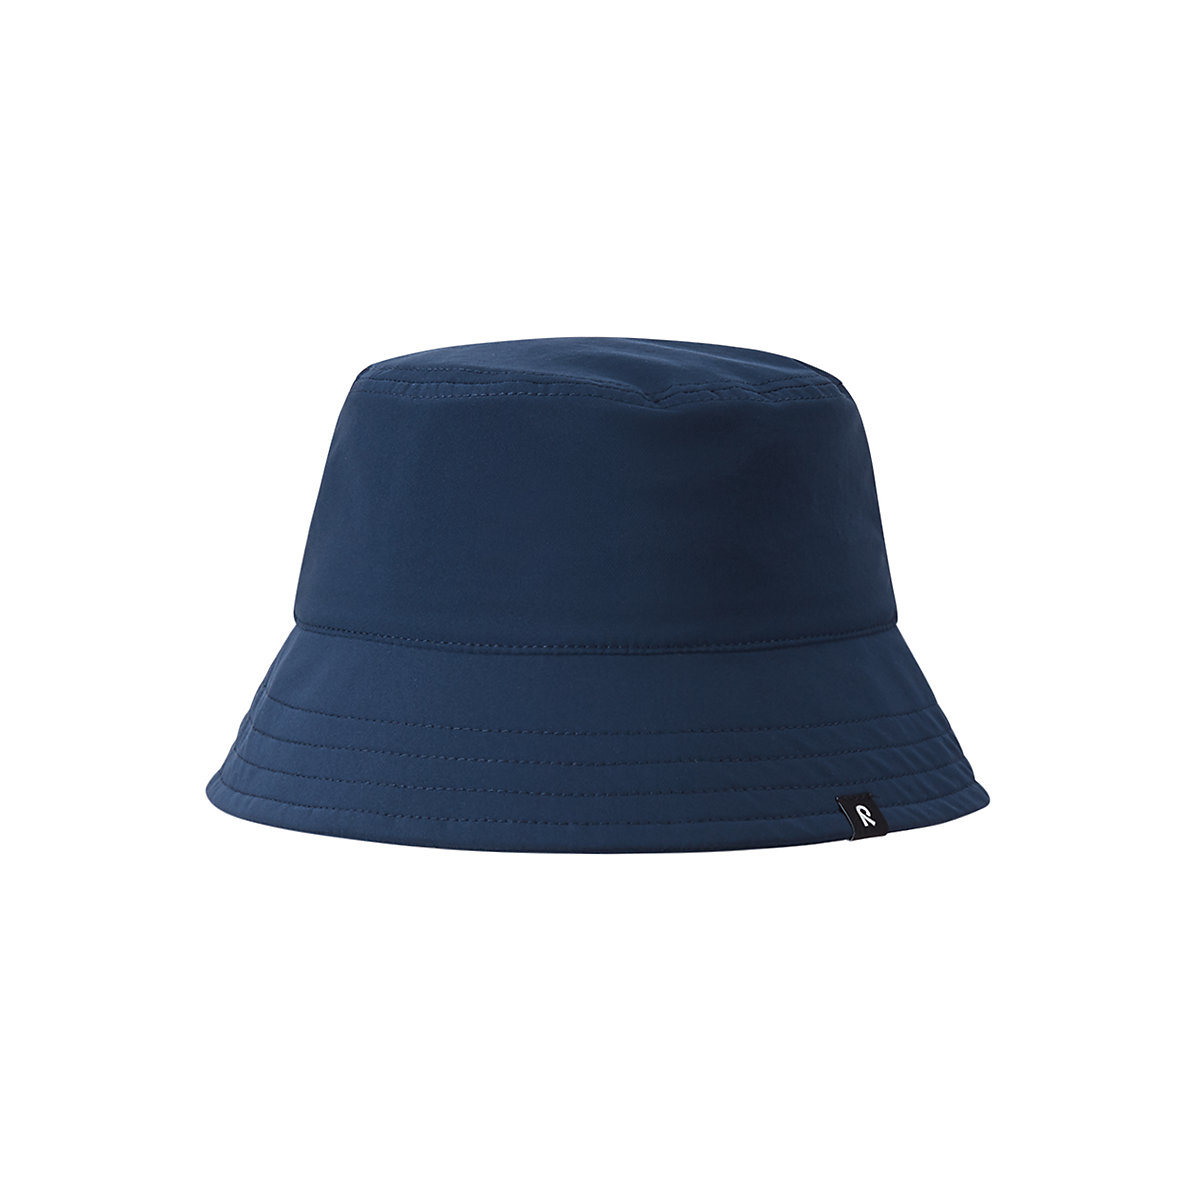 Reima Anti-Bite Hut Itikka Hüte für Kinder blau/grün